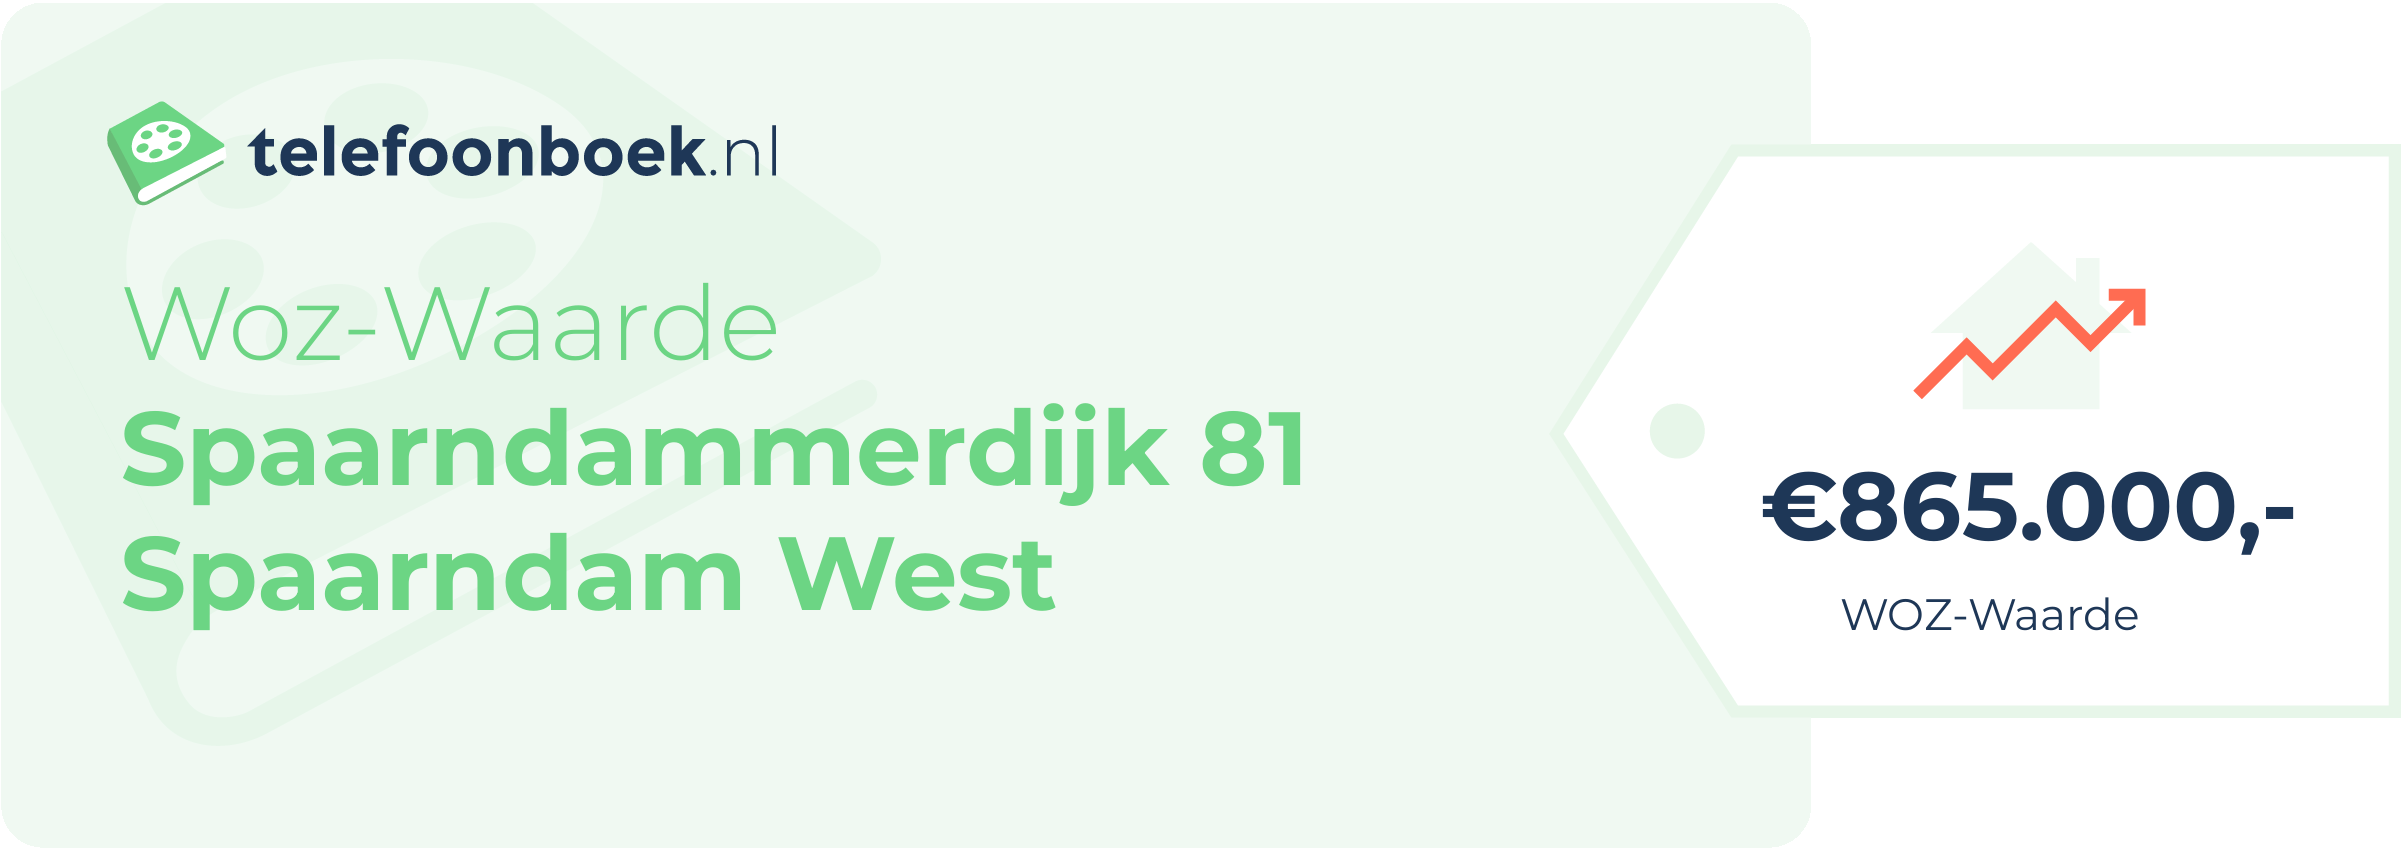 WOZ-waarde Spaarndammerdijk 81 Spaarndam West